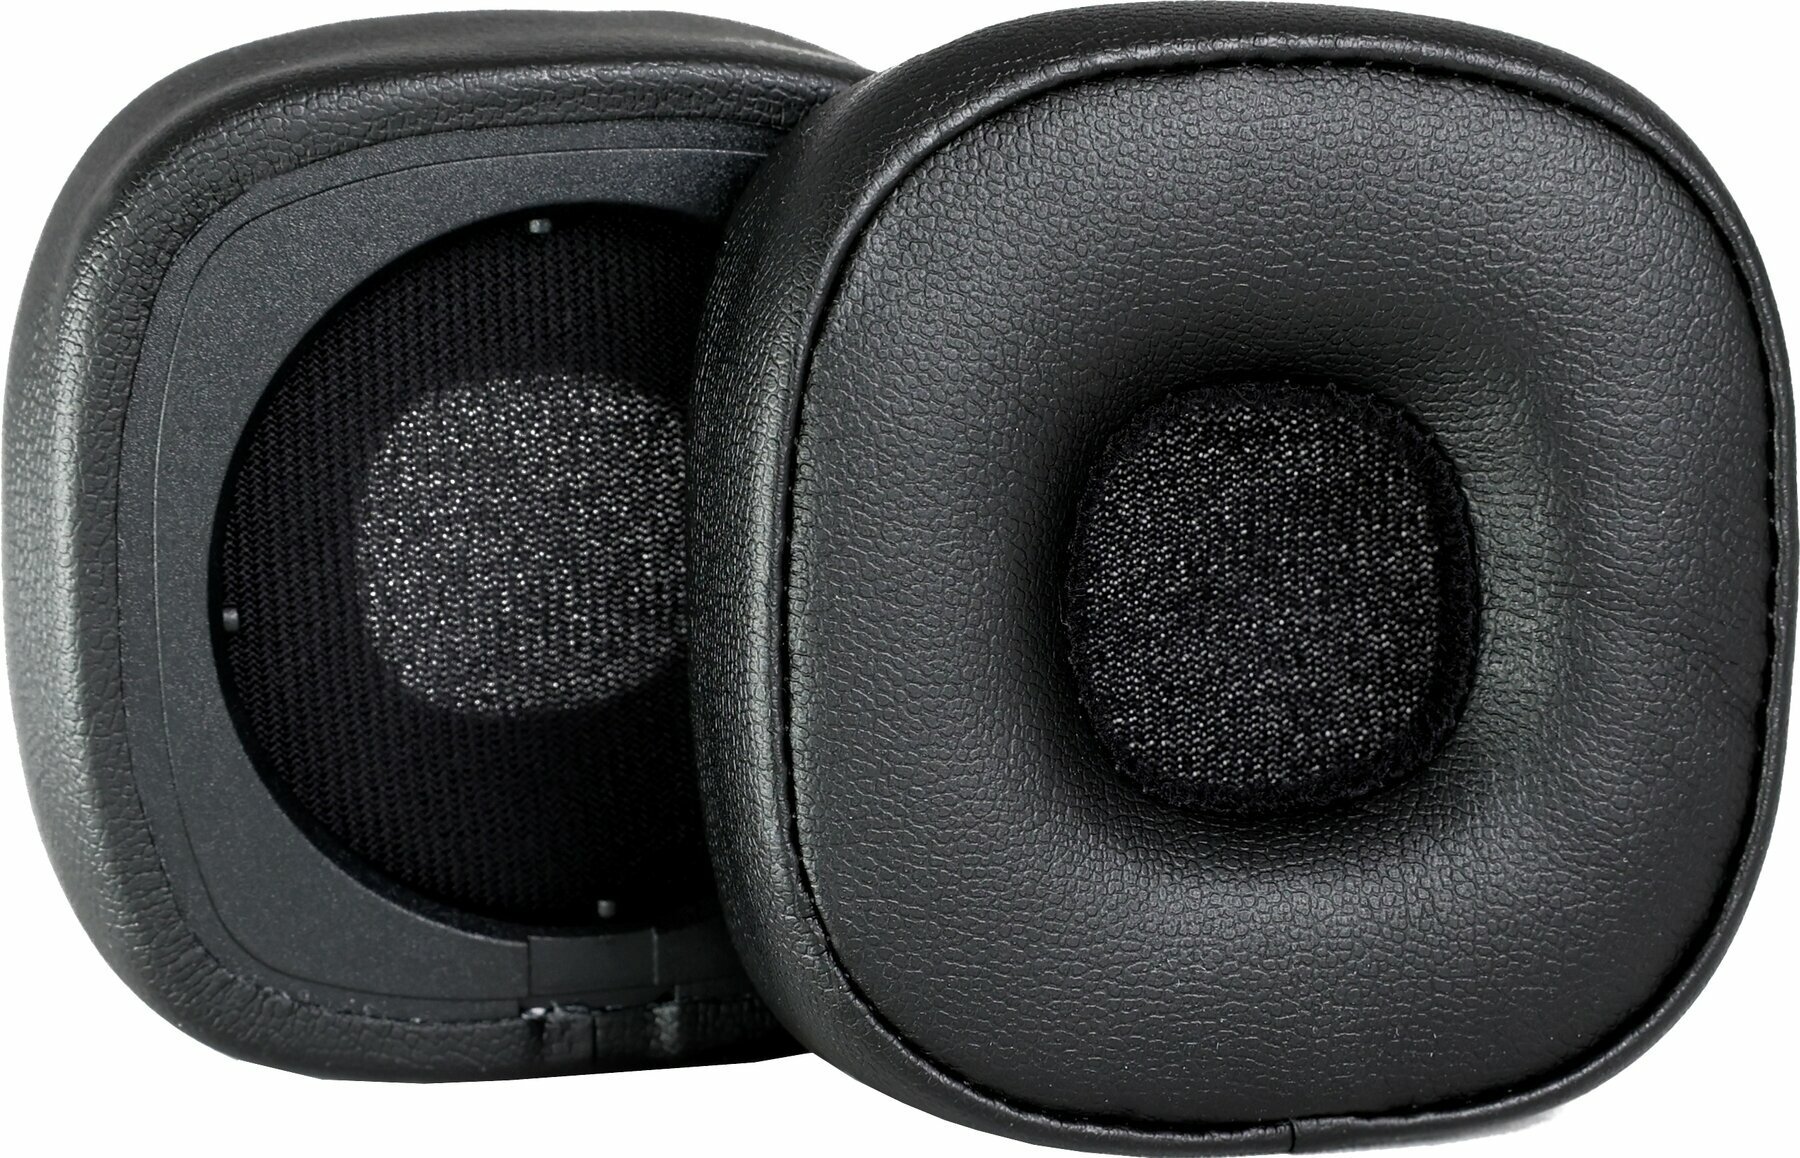 Ear Pads for headphones Veles-X Major IV Ear Pads for headphones Major IV Black